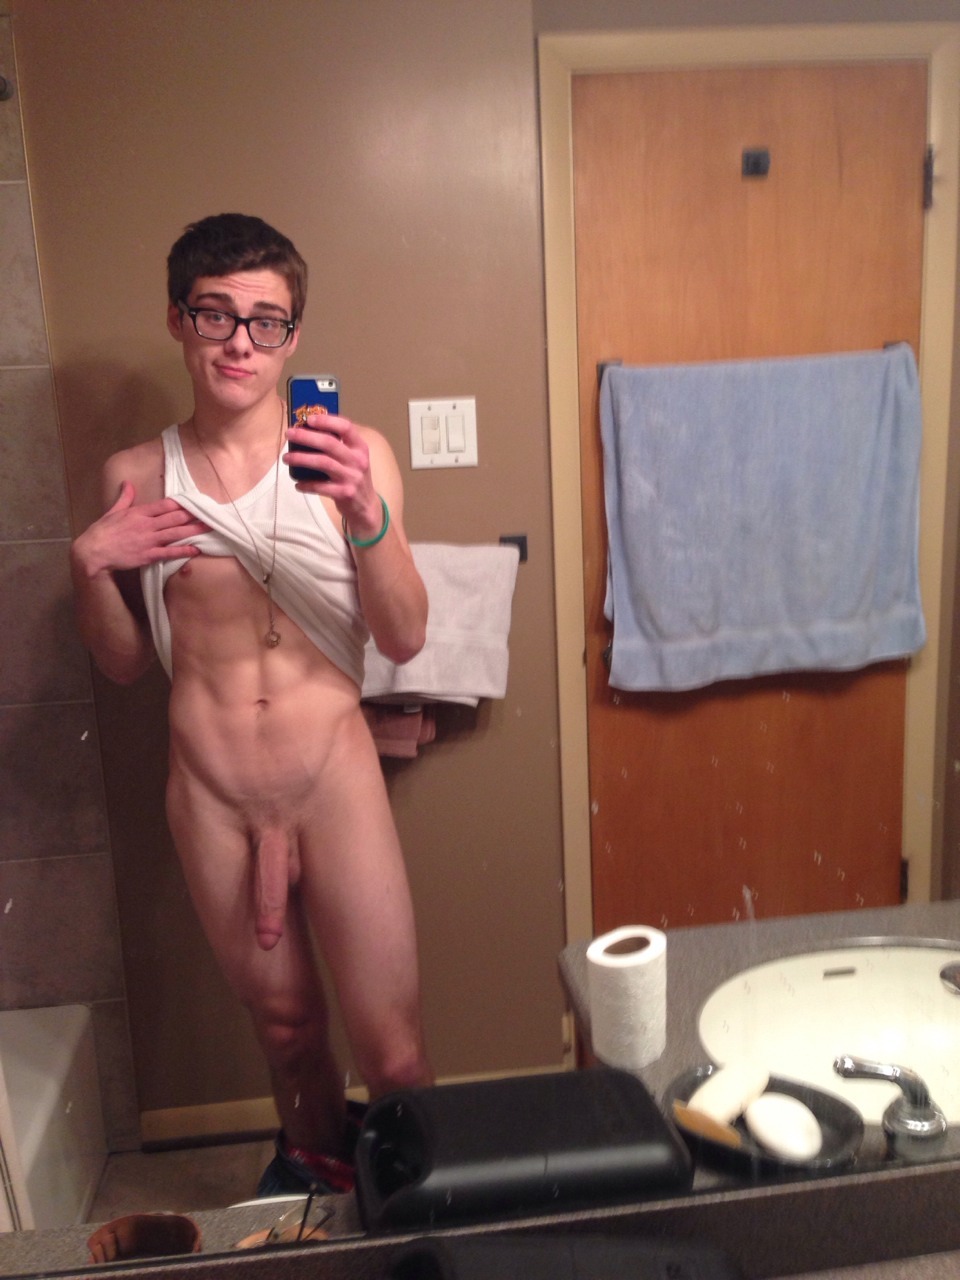 Nude college guy selfie